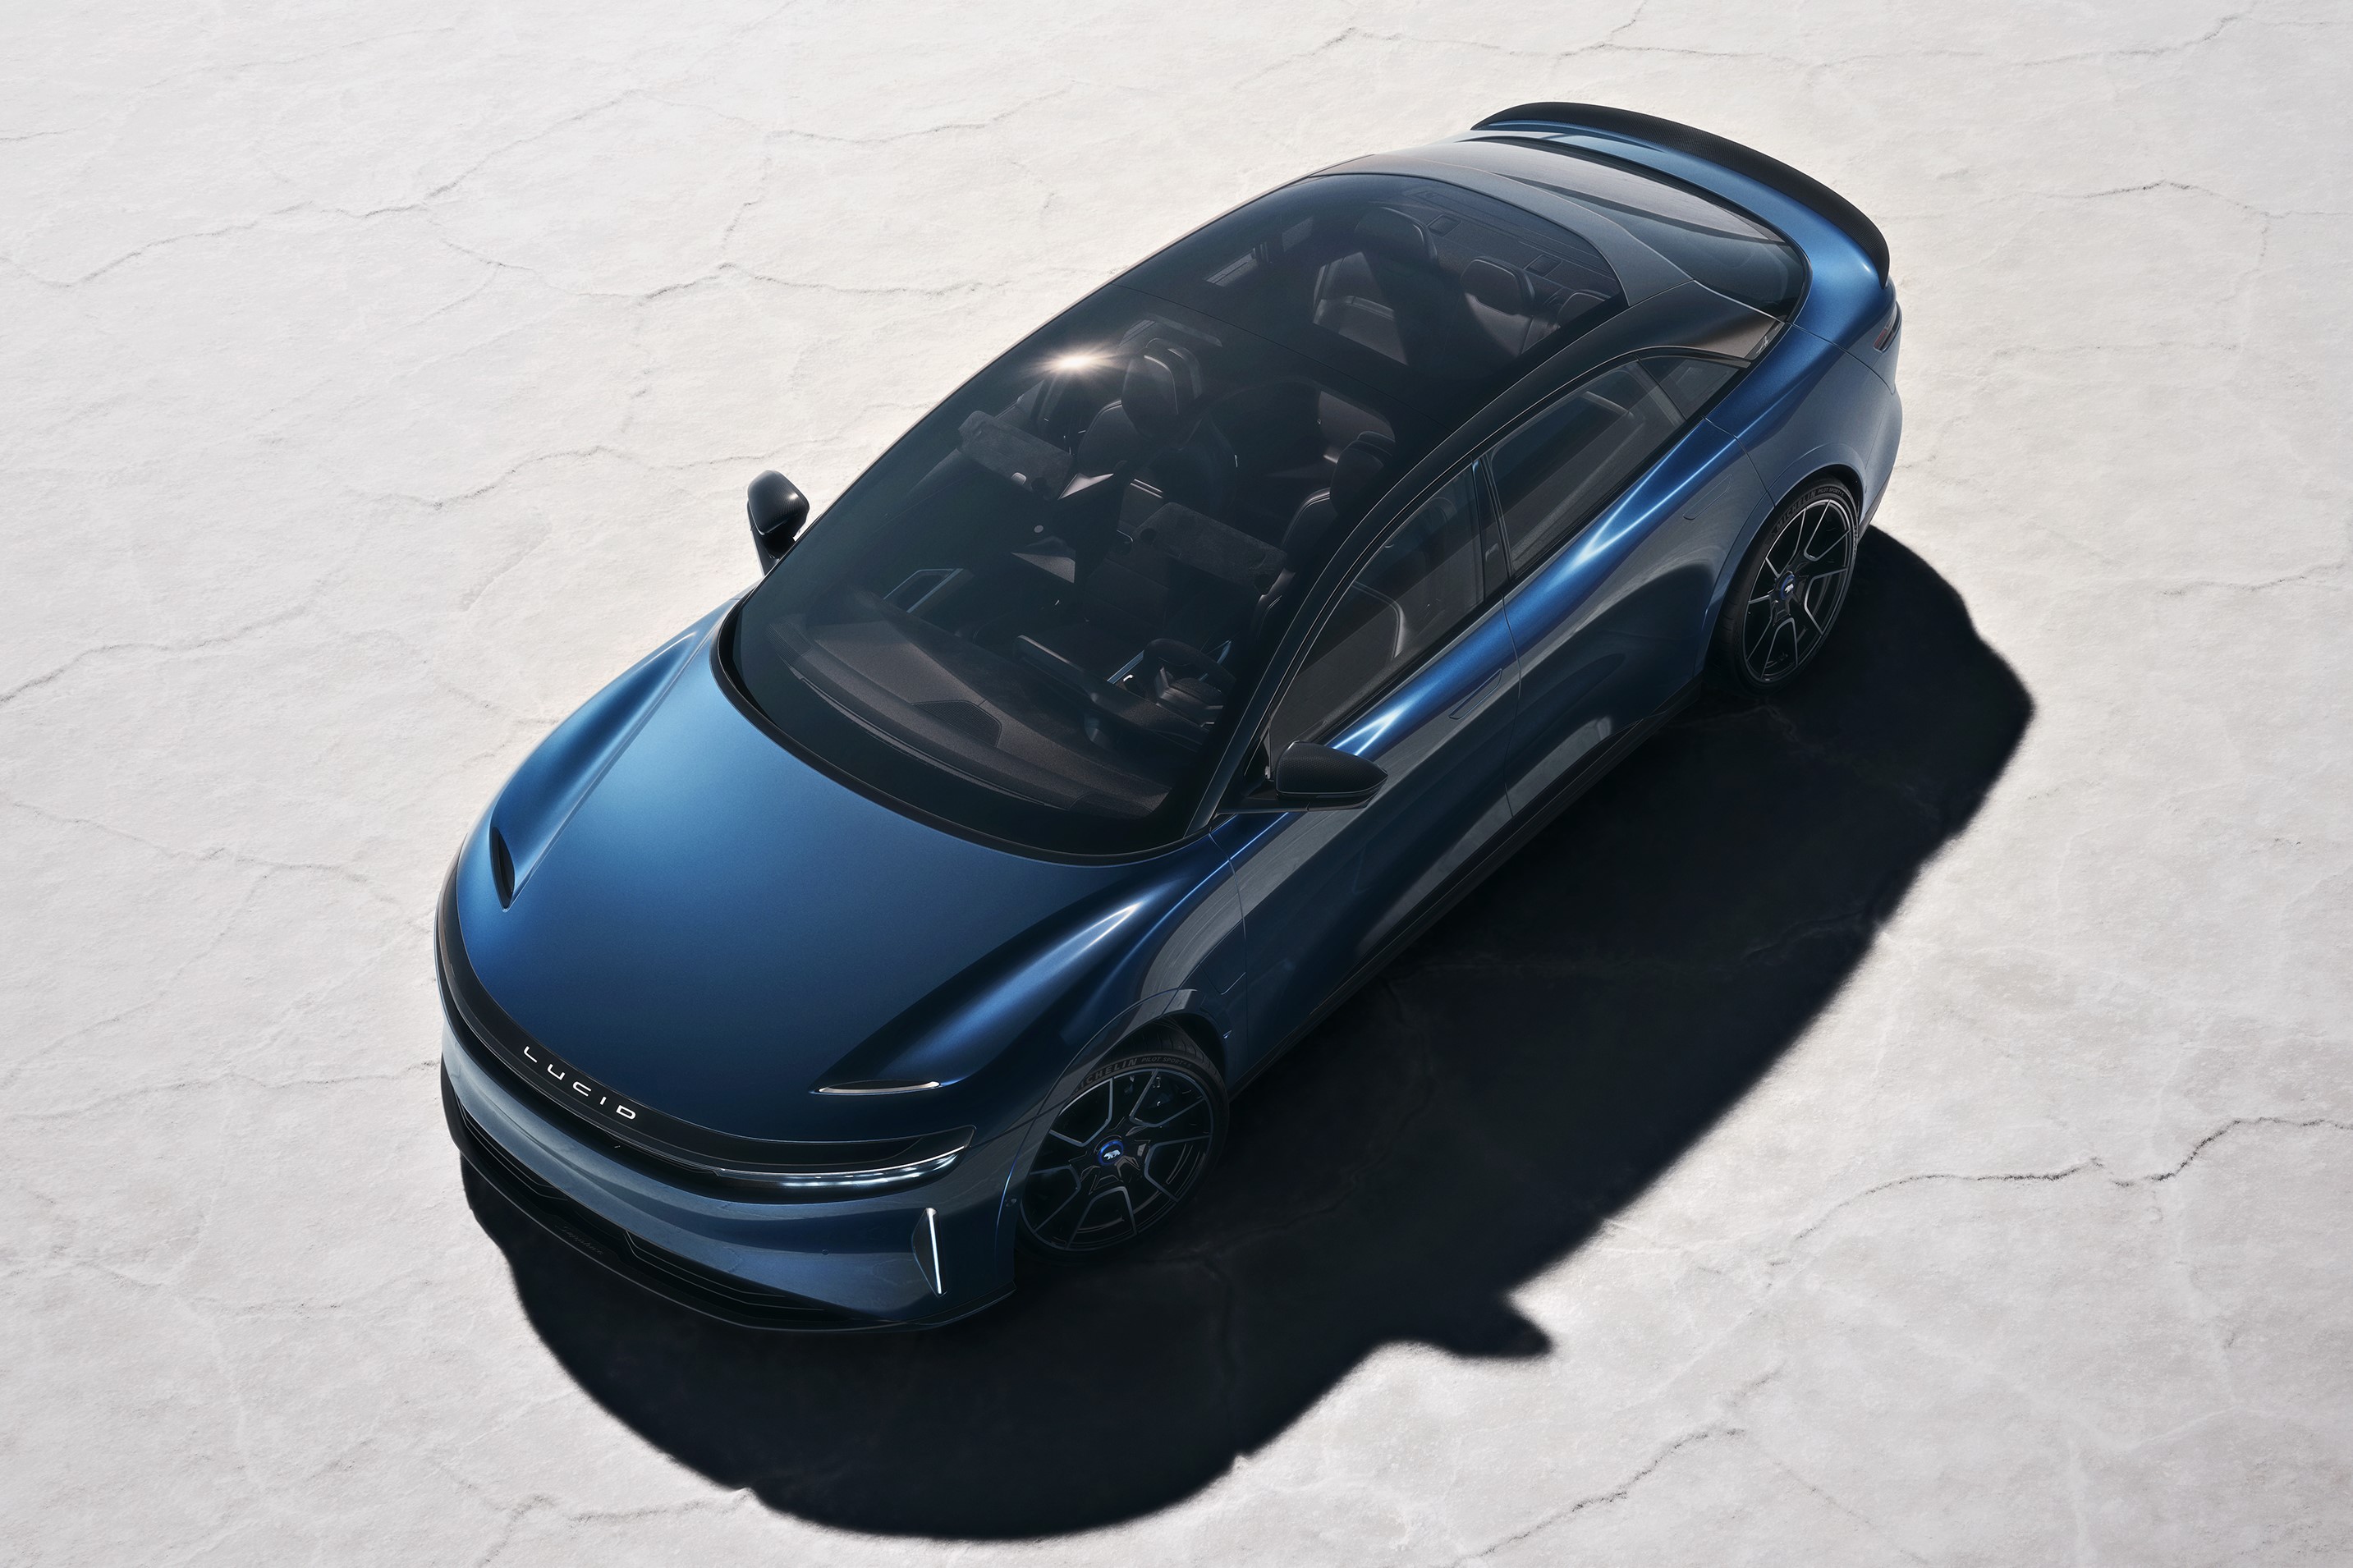 lucid air sapphire najszybszym produkcyjnym sedanem na świecie. podobny spalił się w warszawie